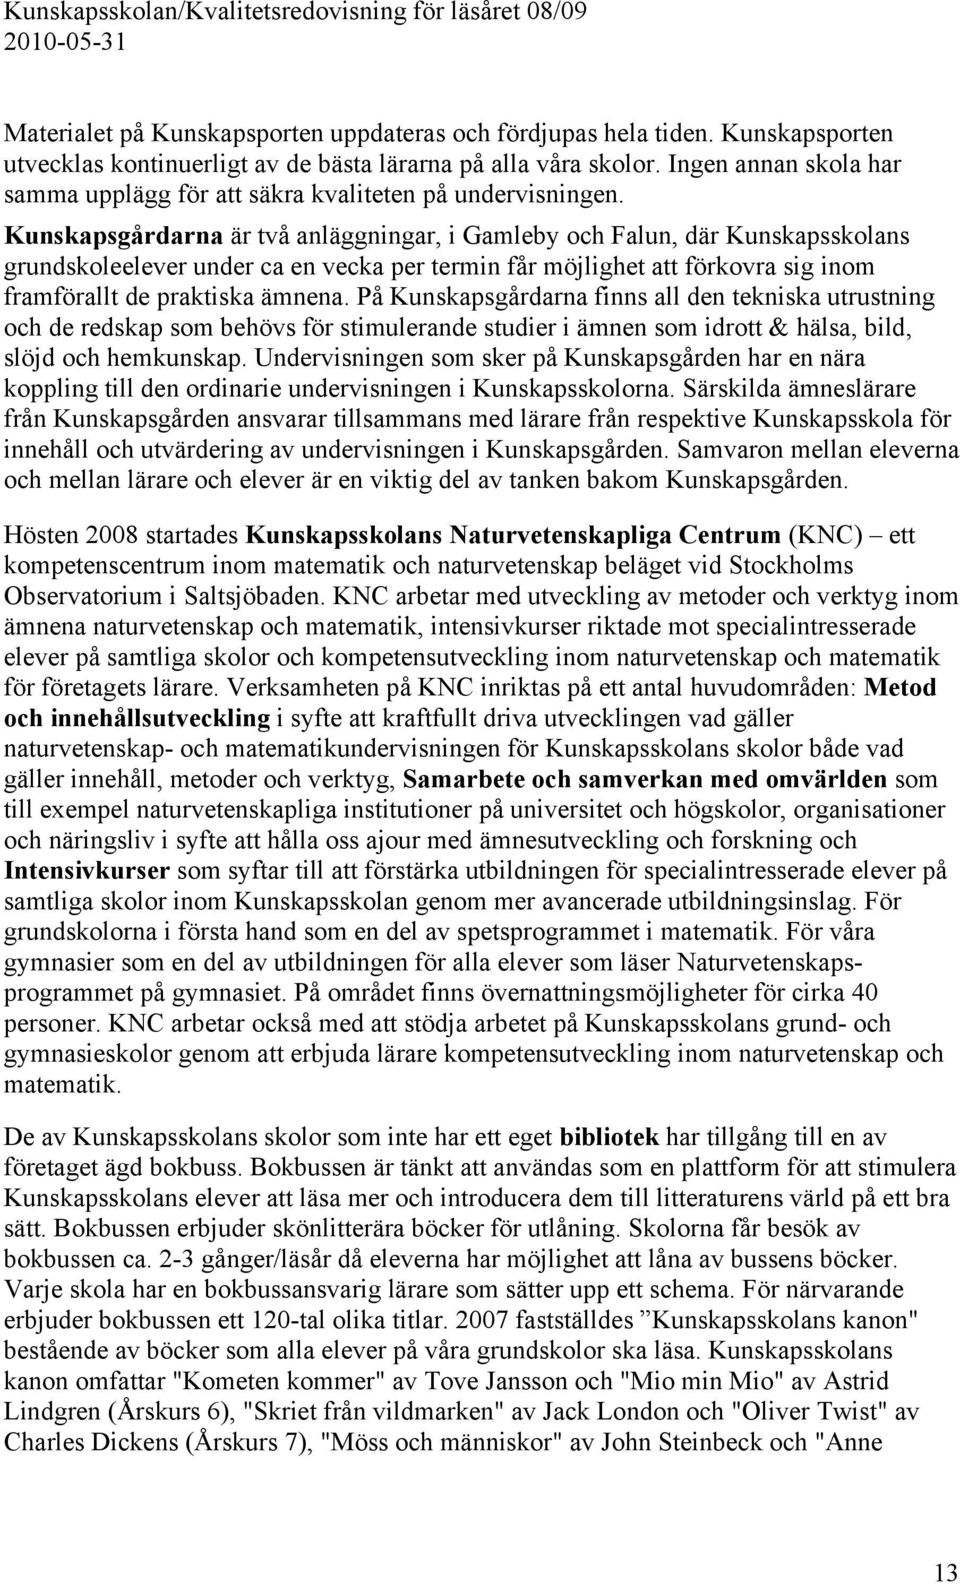 Kunskapsgårdarna är två anläggningar, i Gamleby och Falun, där Kunskapsskolans grundskoleelever under ca en vecka per termin får möjlighet att förkovra sig inom framförallt de praktiska ämnena.